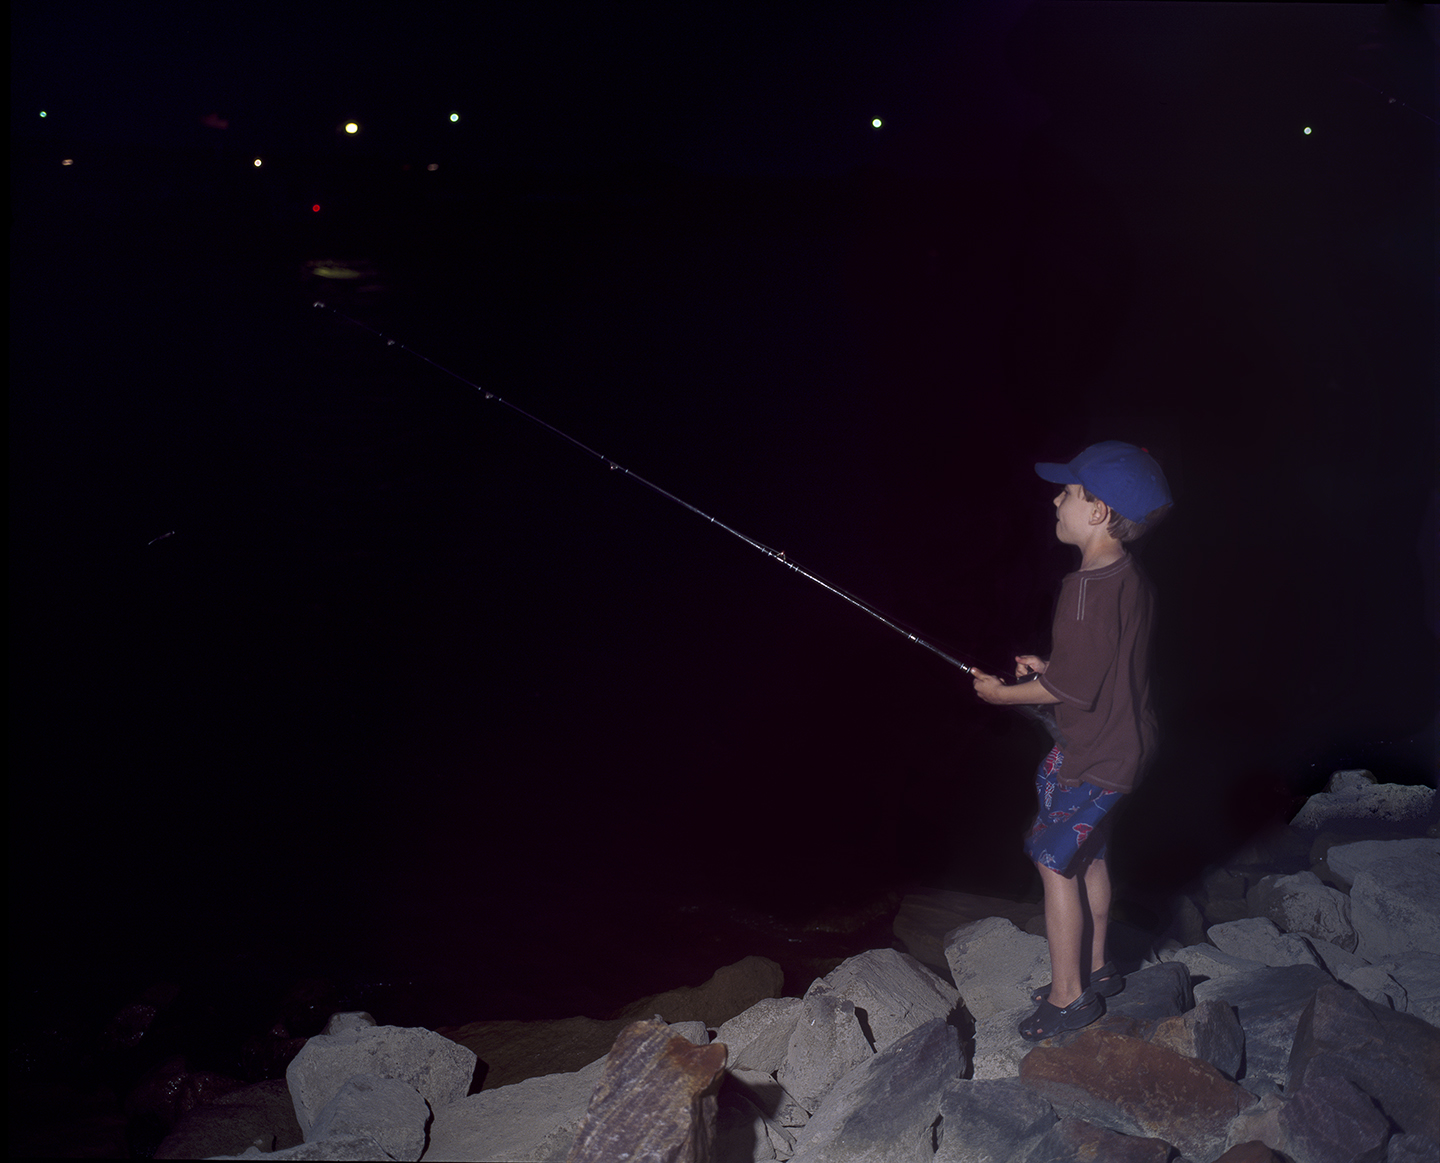 Boy Fishing at Night